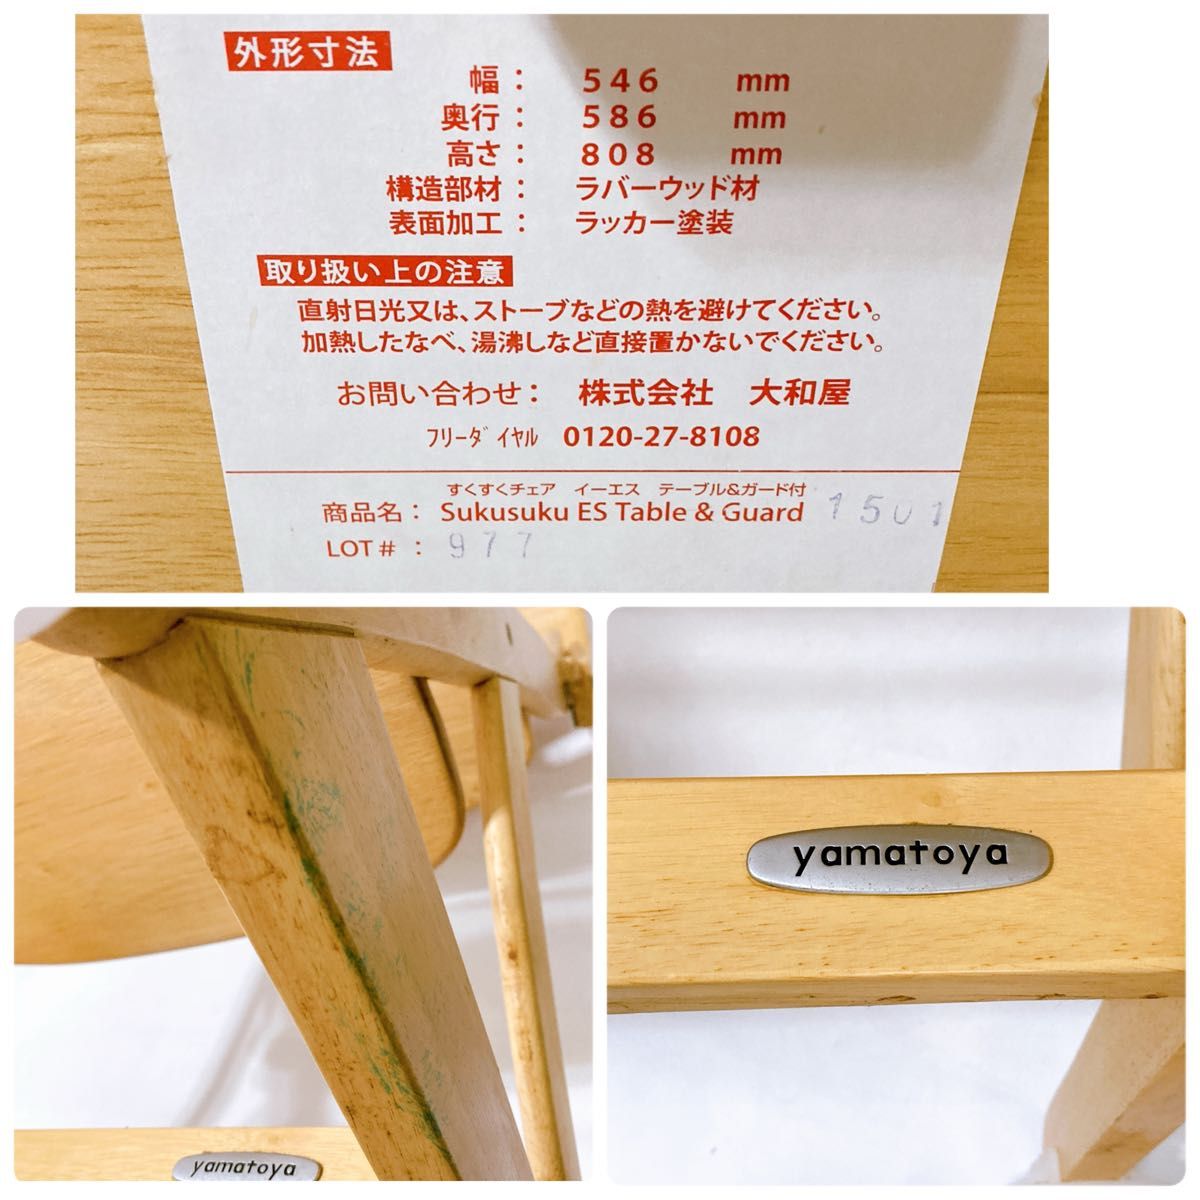  【良品】大和屋 すくすくチェア イーエス ES テーブル&ガード付き 椅子 ベビー